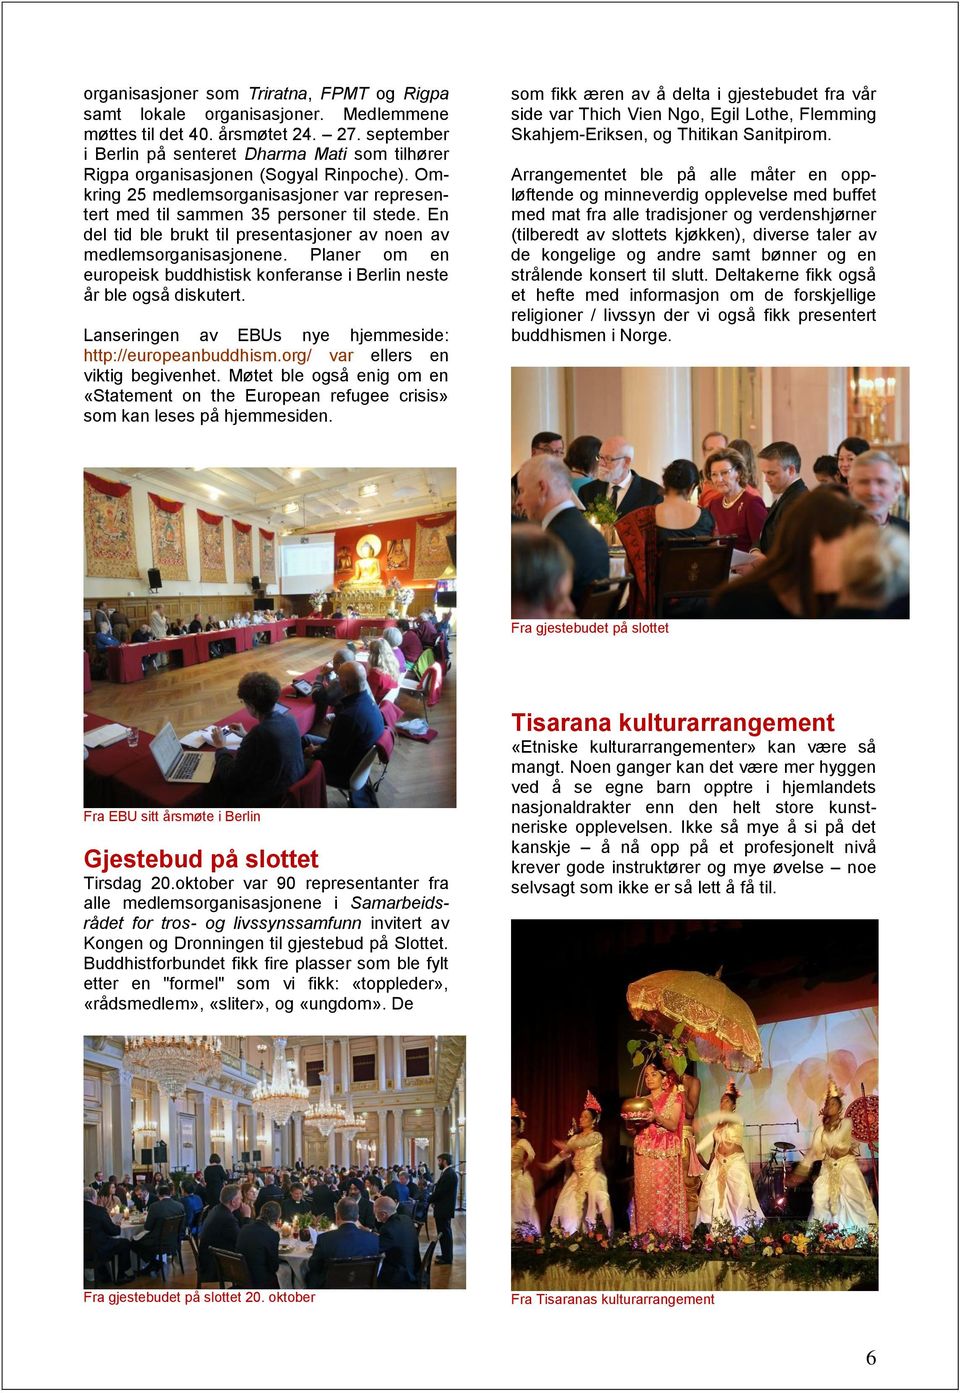 En del tid ble brukt til presentasjoner av noen av medlemsorganisasjonene. Planer om en europeisk buddhistisk konferanse i Berlin neste år ble også diskutert.